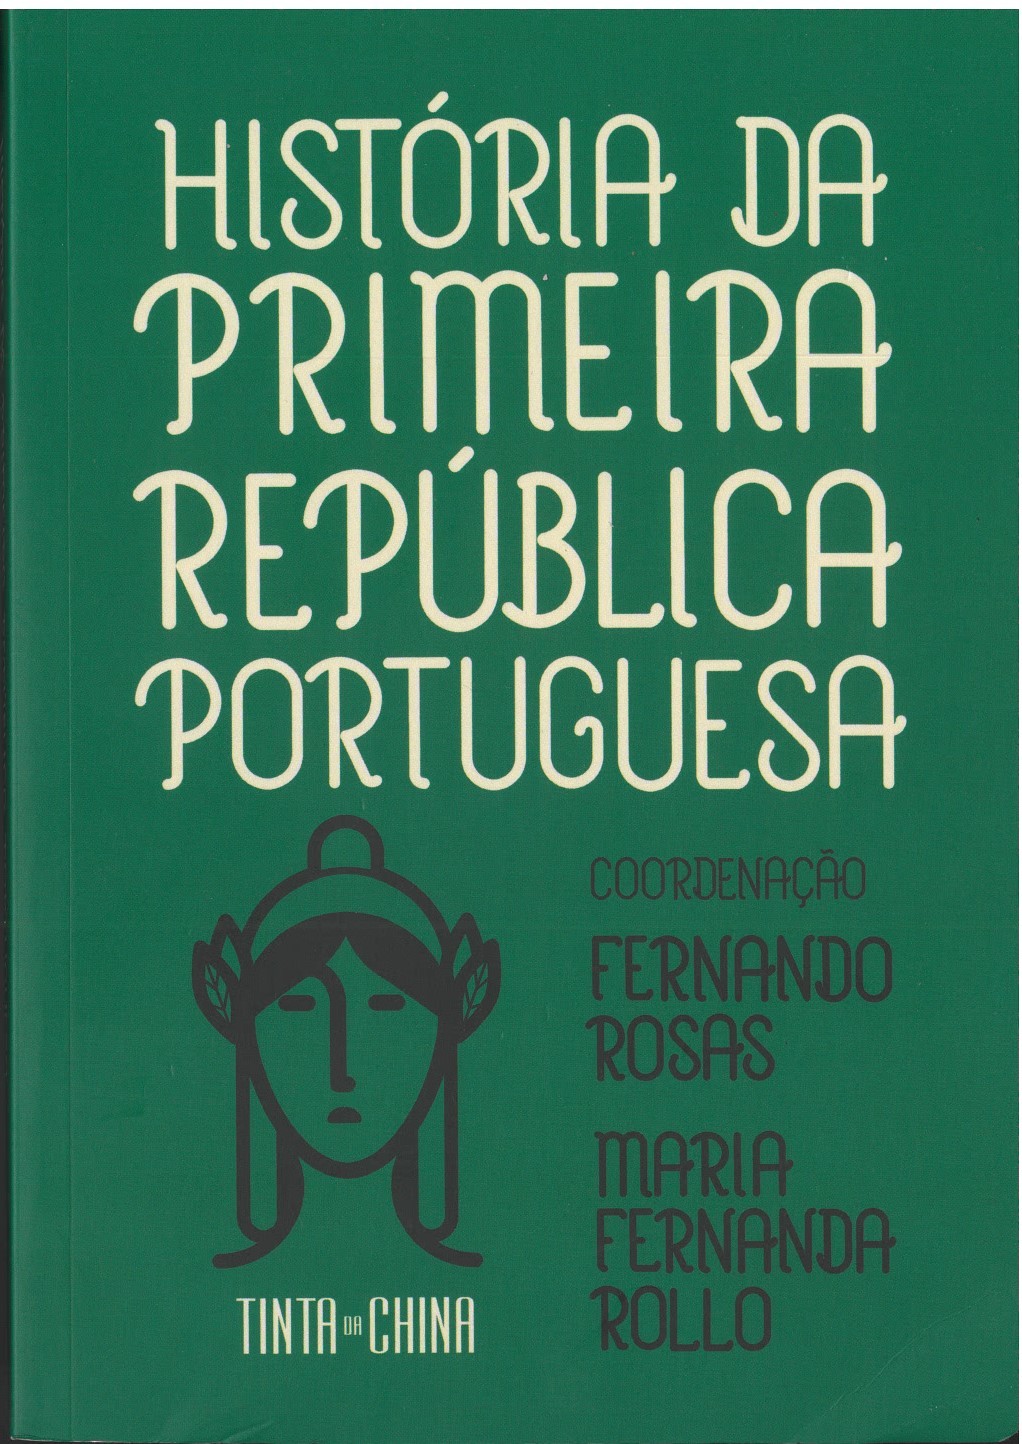 Fernando Rosas, Maria Fernanda Rollo (coordenação) - História da Primeira República Portuguesa